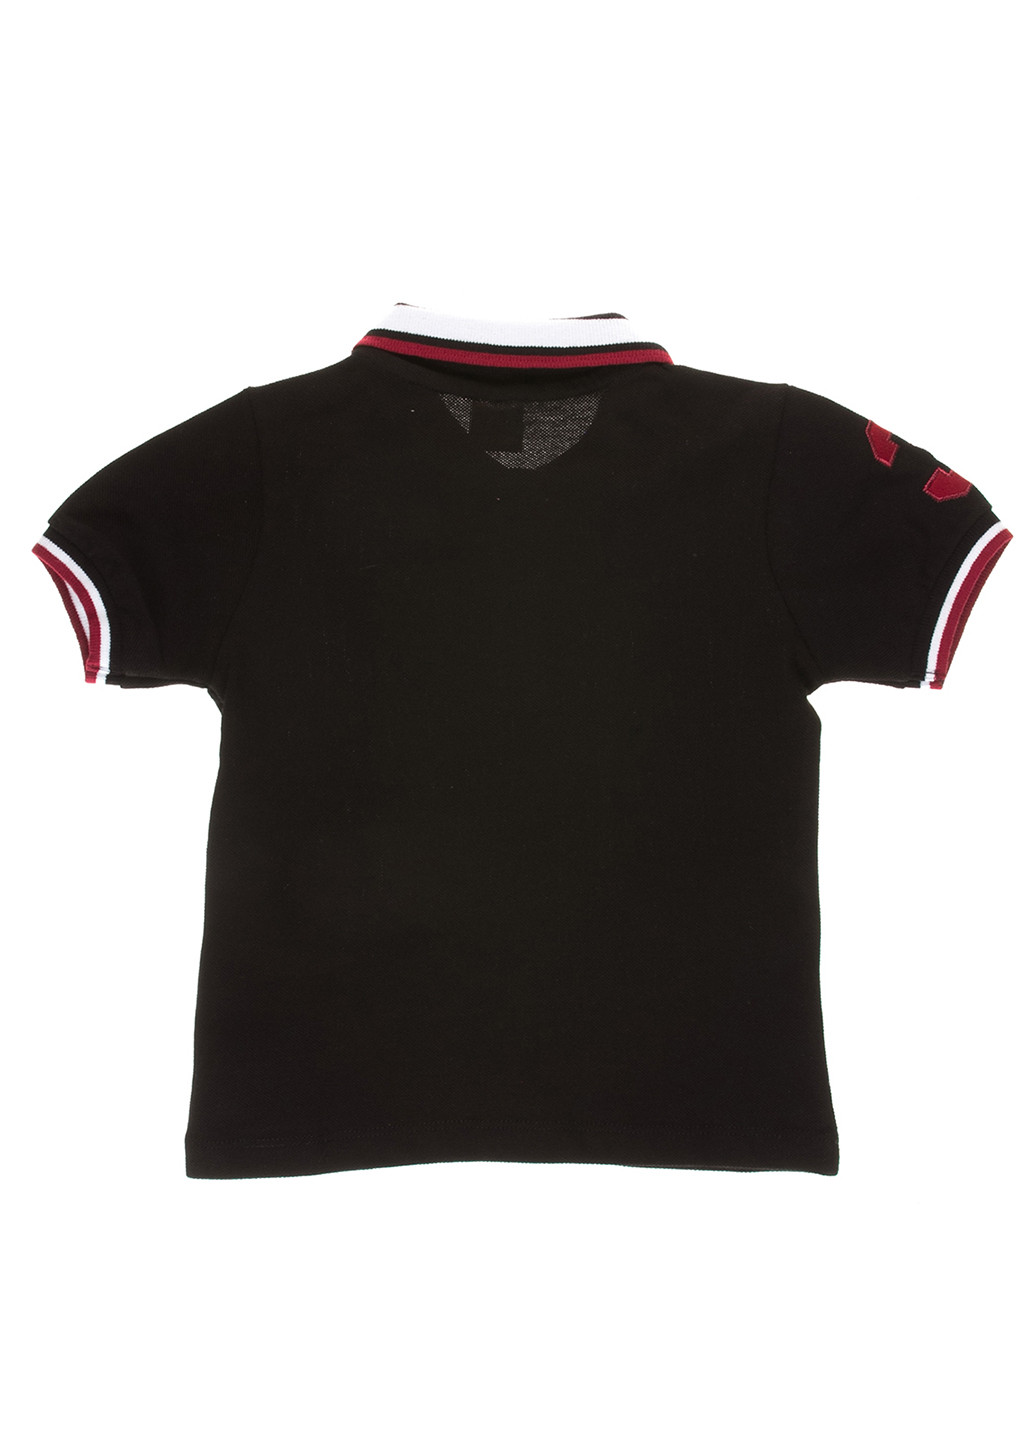 Черная детская футболка-футболка для мальчика Starlet с логотипом